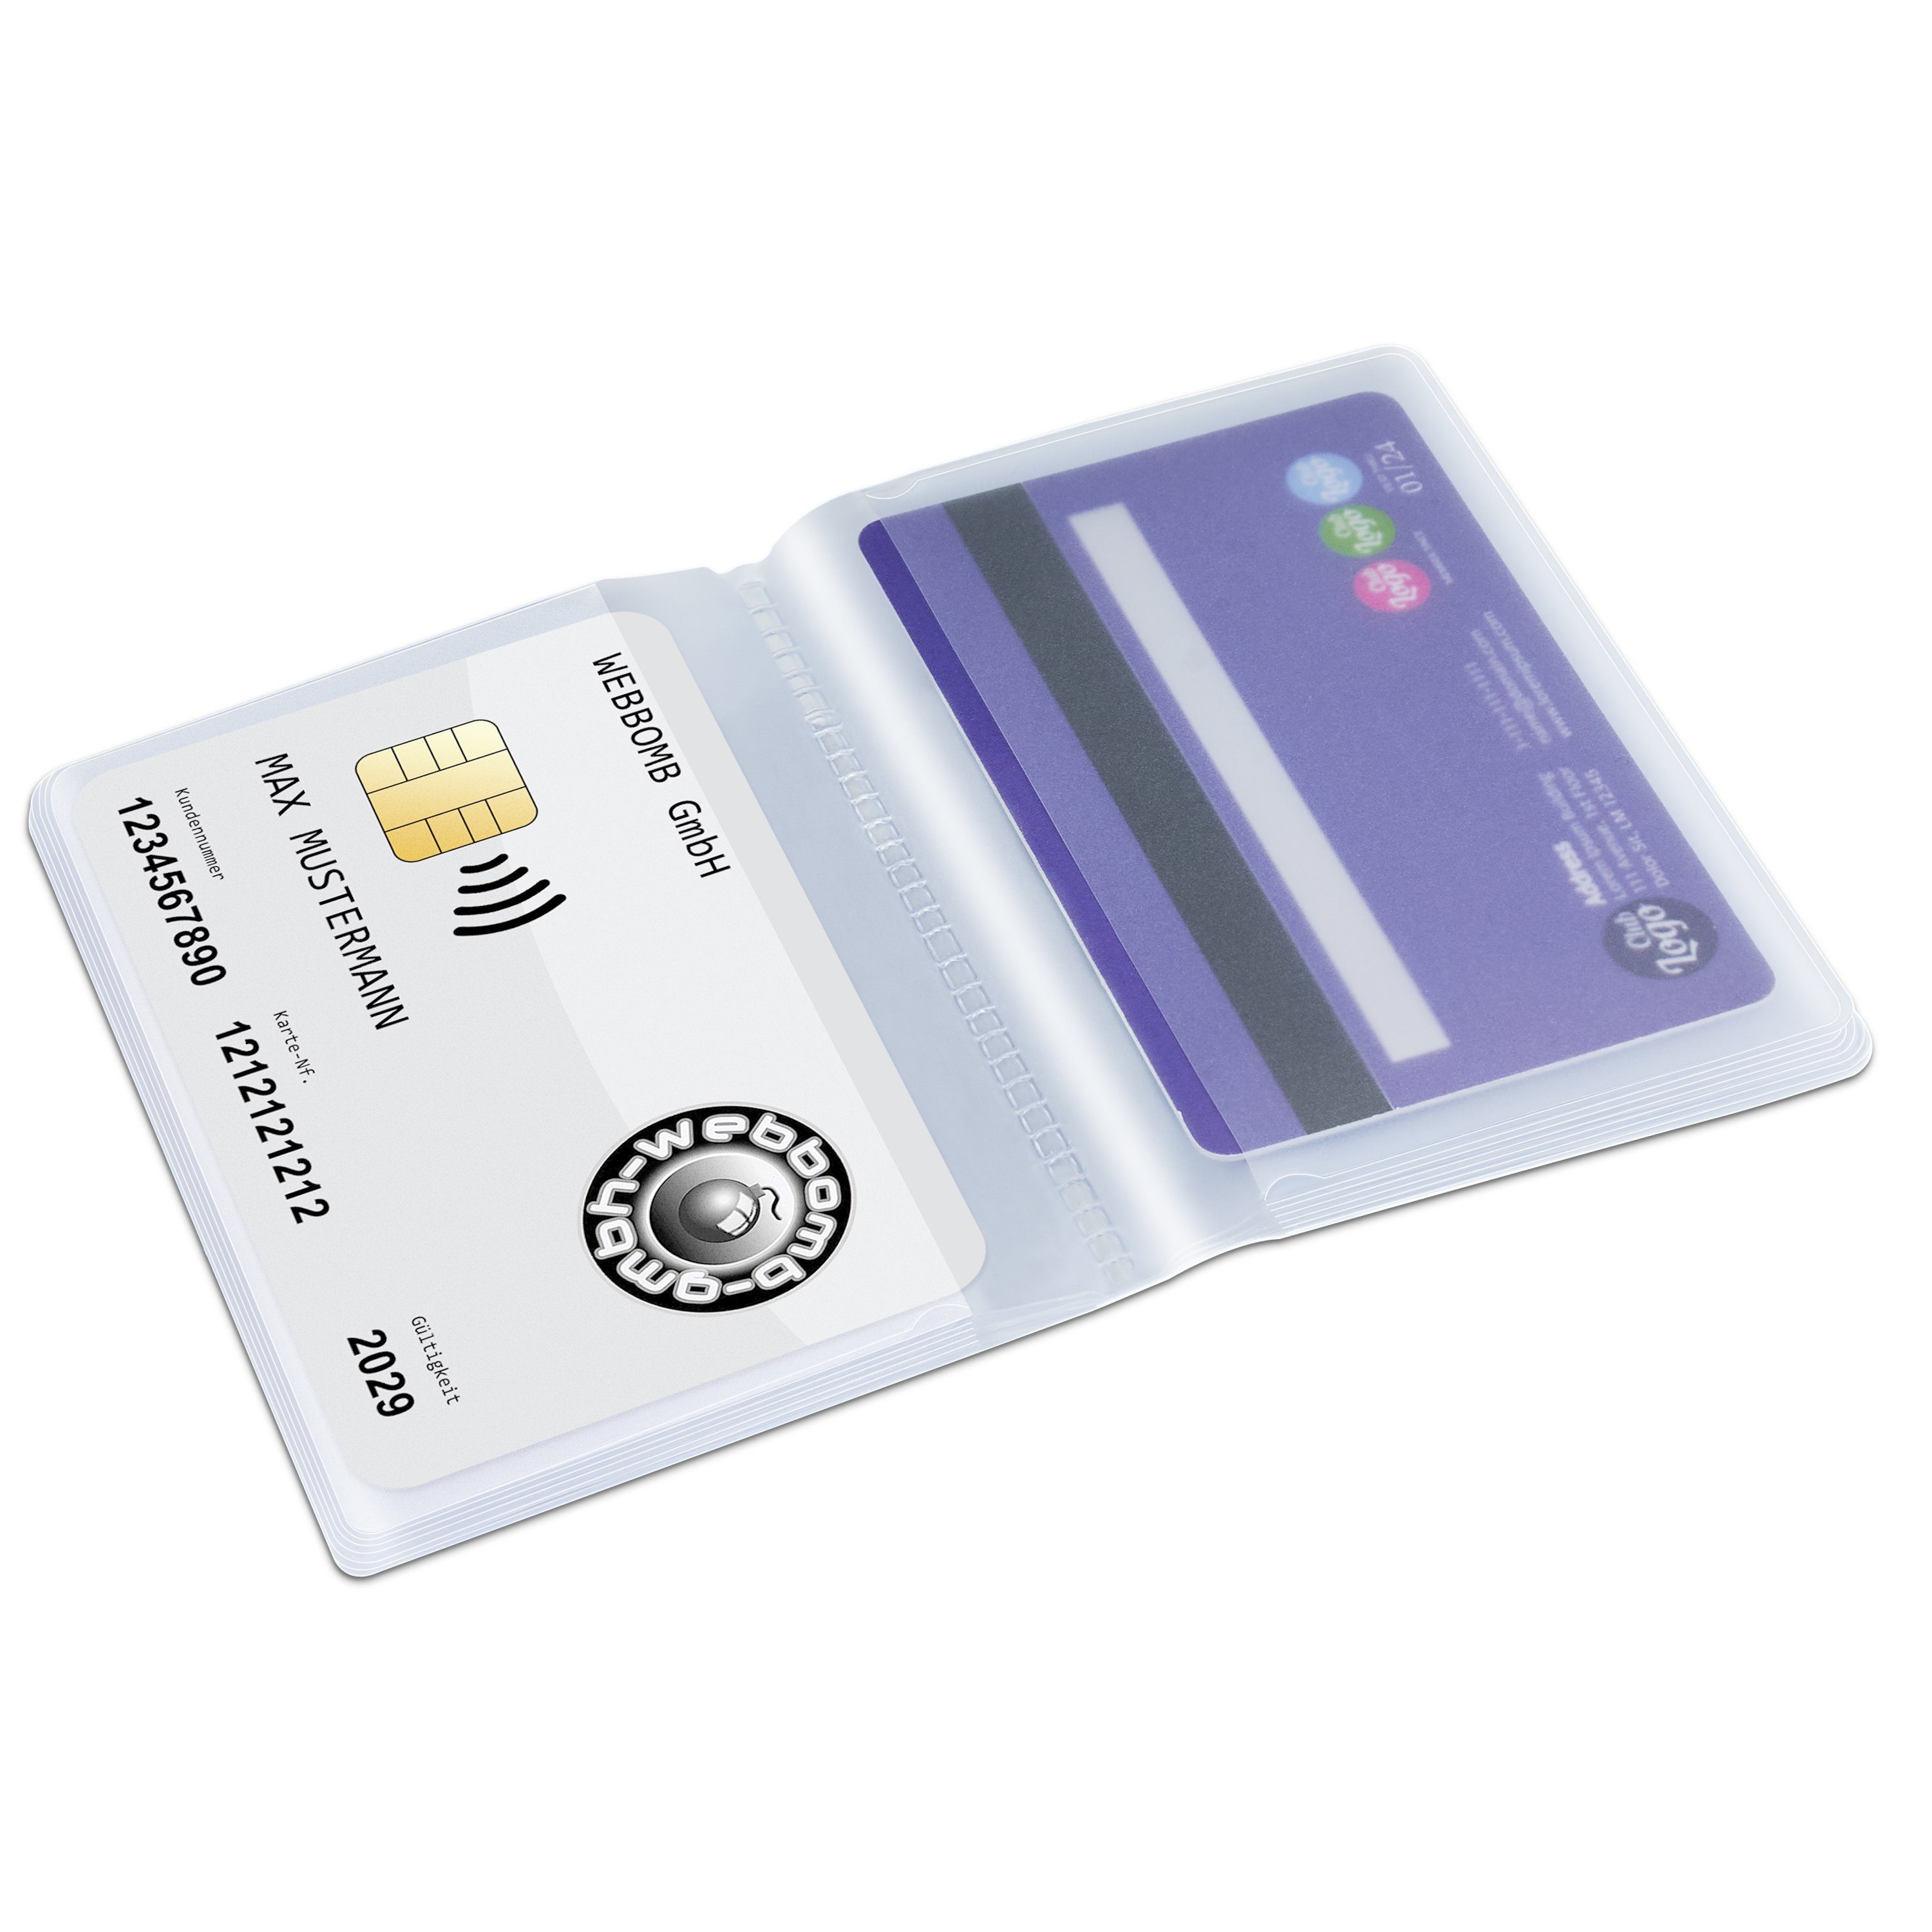 Kartenhalter 10fach transparent WEBBOMB Einsatz Etui 2x10fach Wallet Brieftaschen Kartenetui